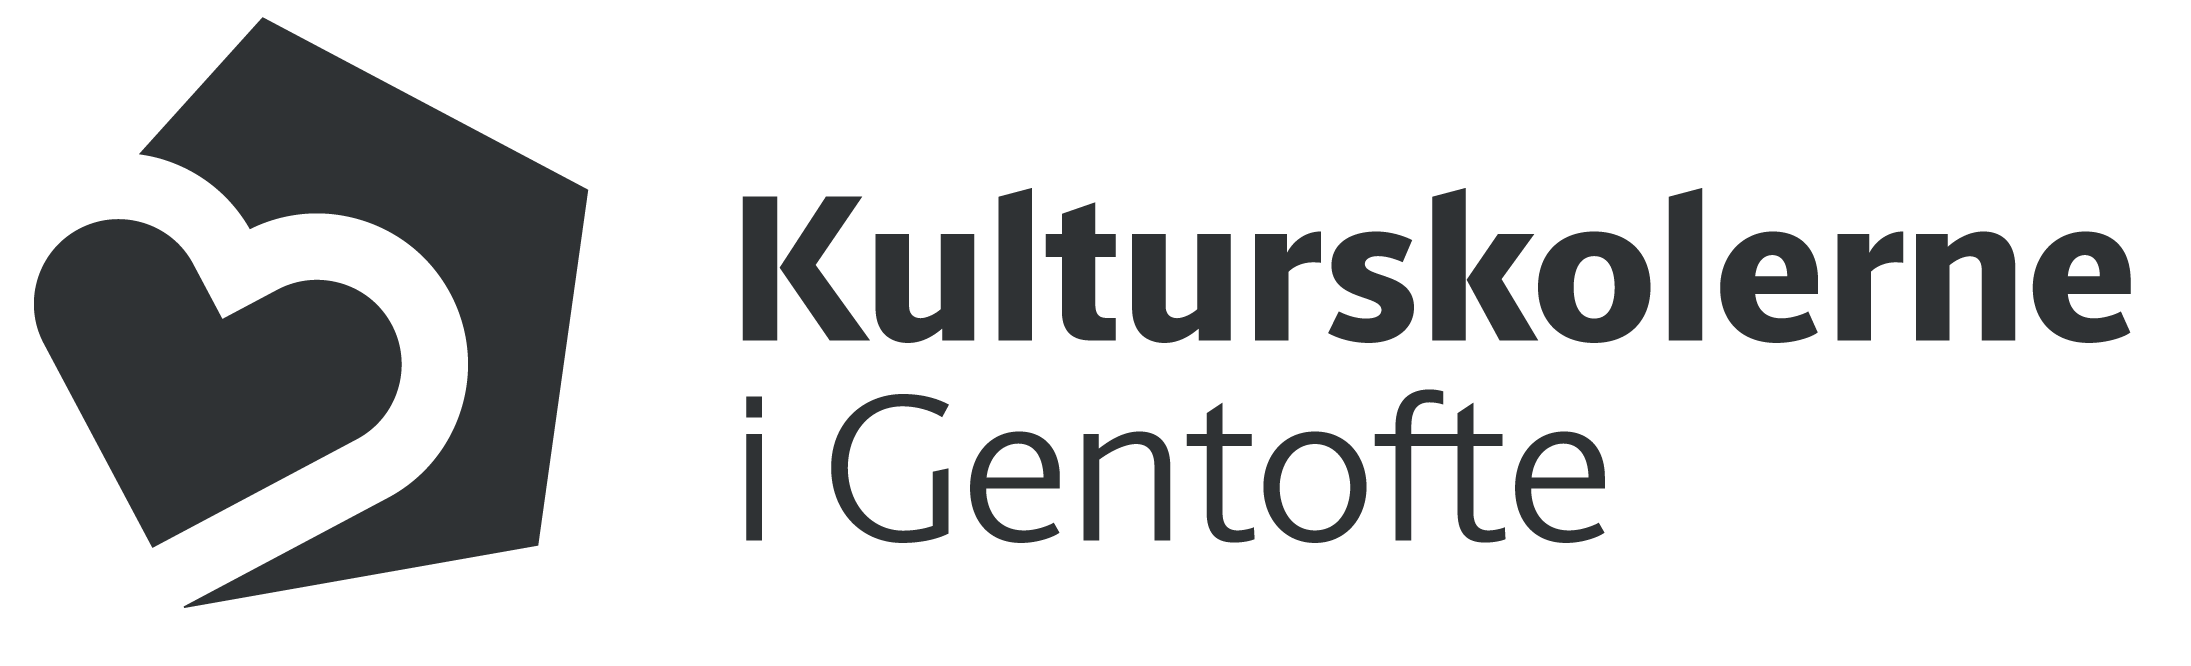 Gentofte Drama, Billed og Forfatterskole Logo